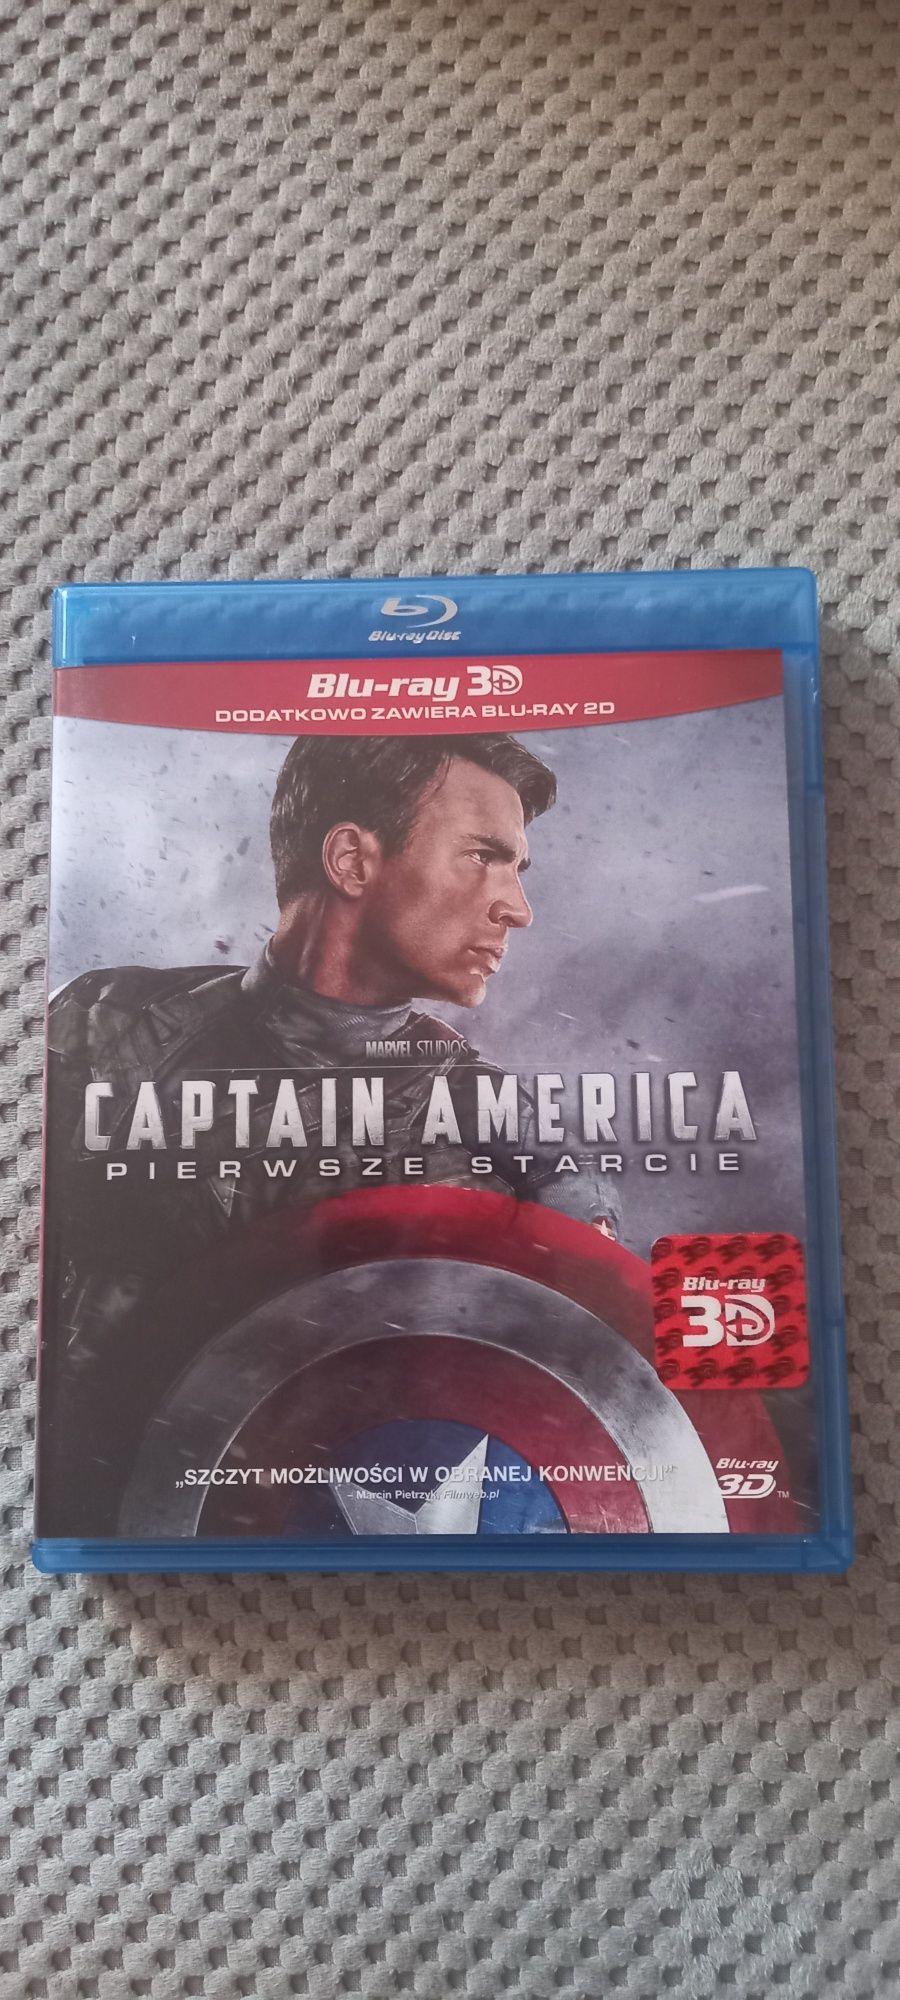 Captain America  pierwsze starcie blu  ray